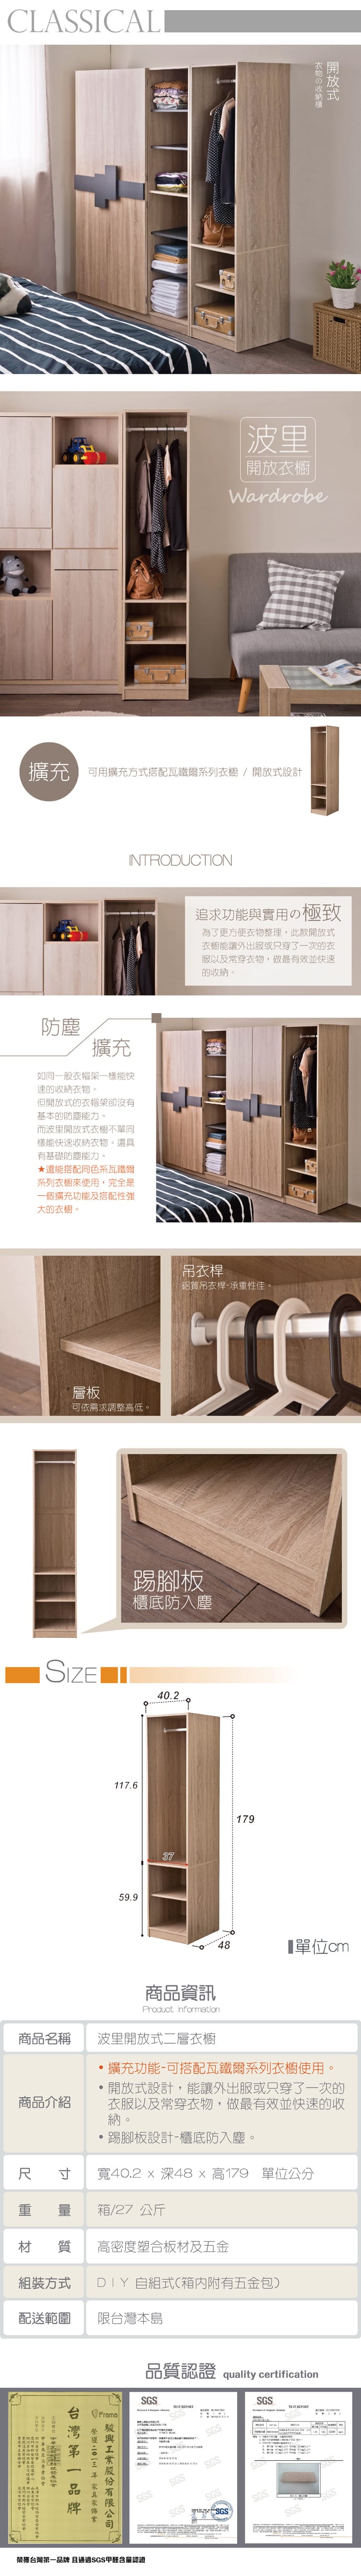 【TZUMii】日式大空間收納櫃衣帽架 雙門衣櫥/二門六格衣櫥/開放式二層衣櫥